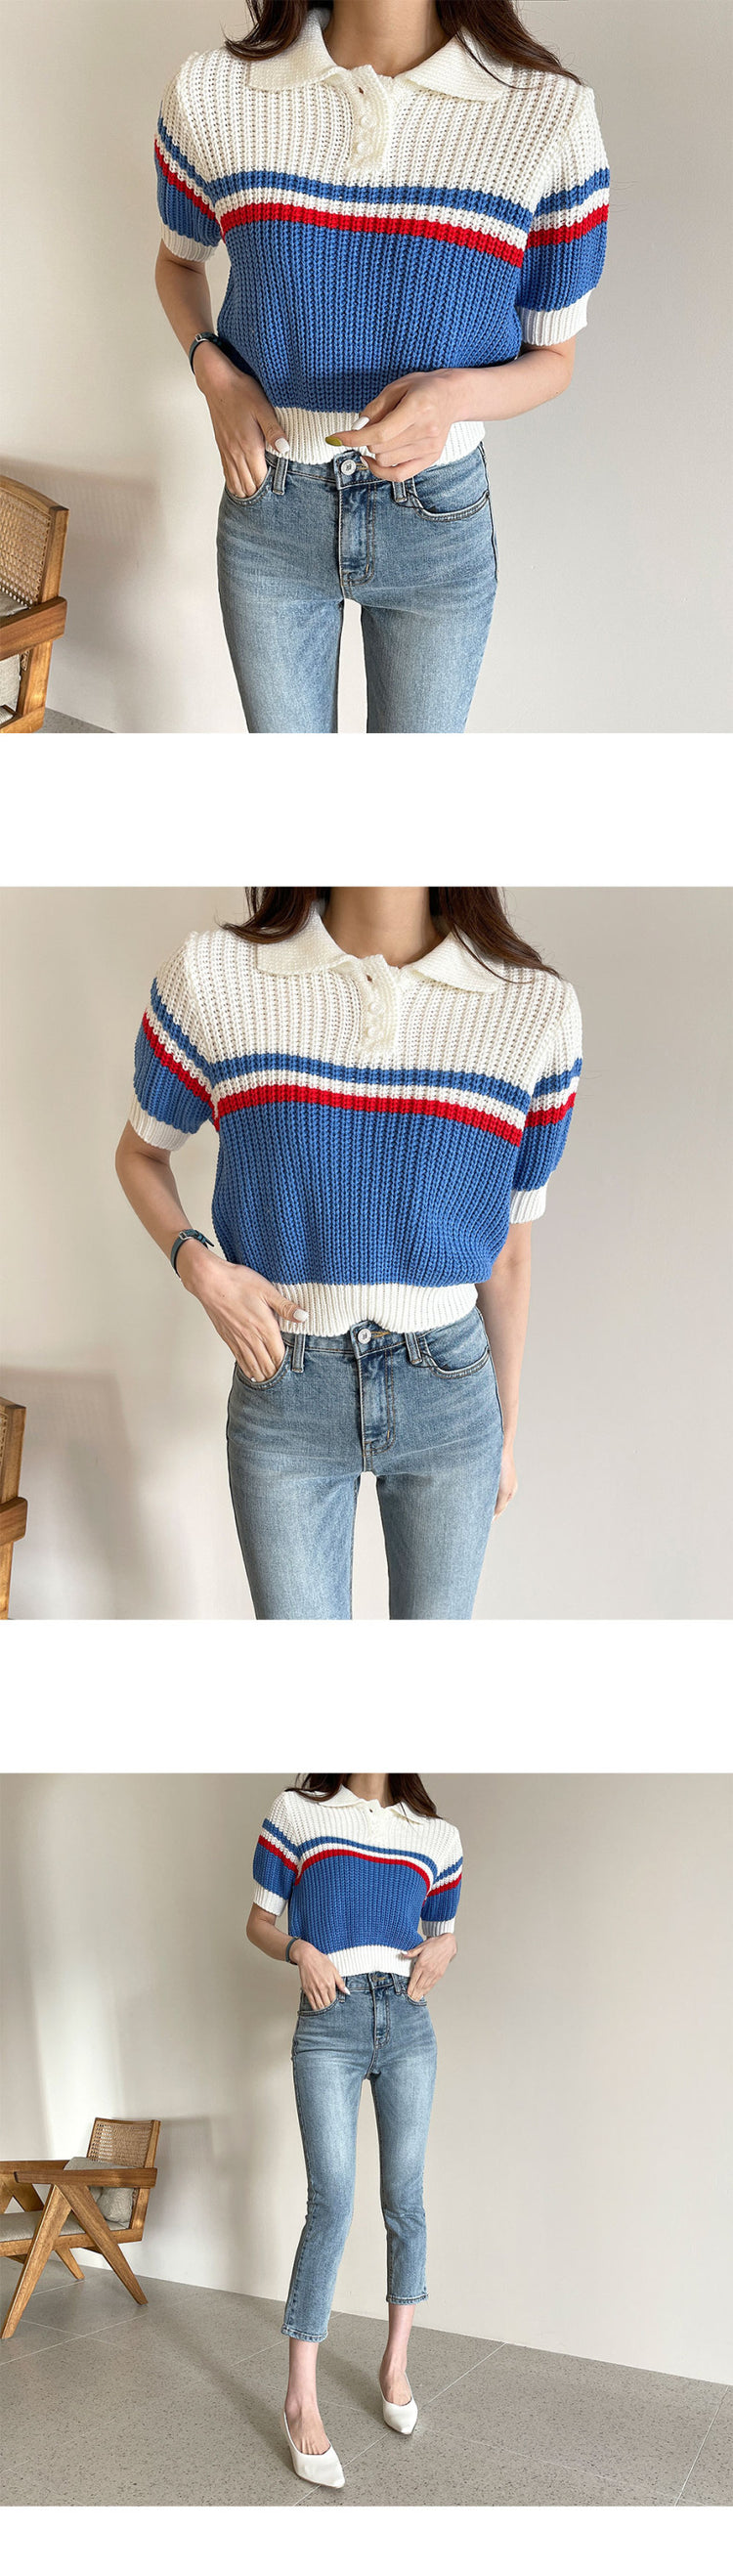 Theoneshopsレディース ファッション 配色 スウェット 春 新作 合わせやすい 韓国 気質 オシャレ 半袖 ニットセーター